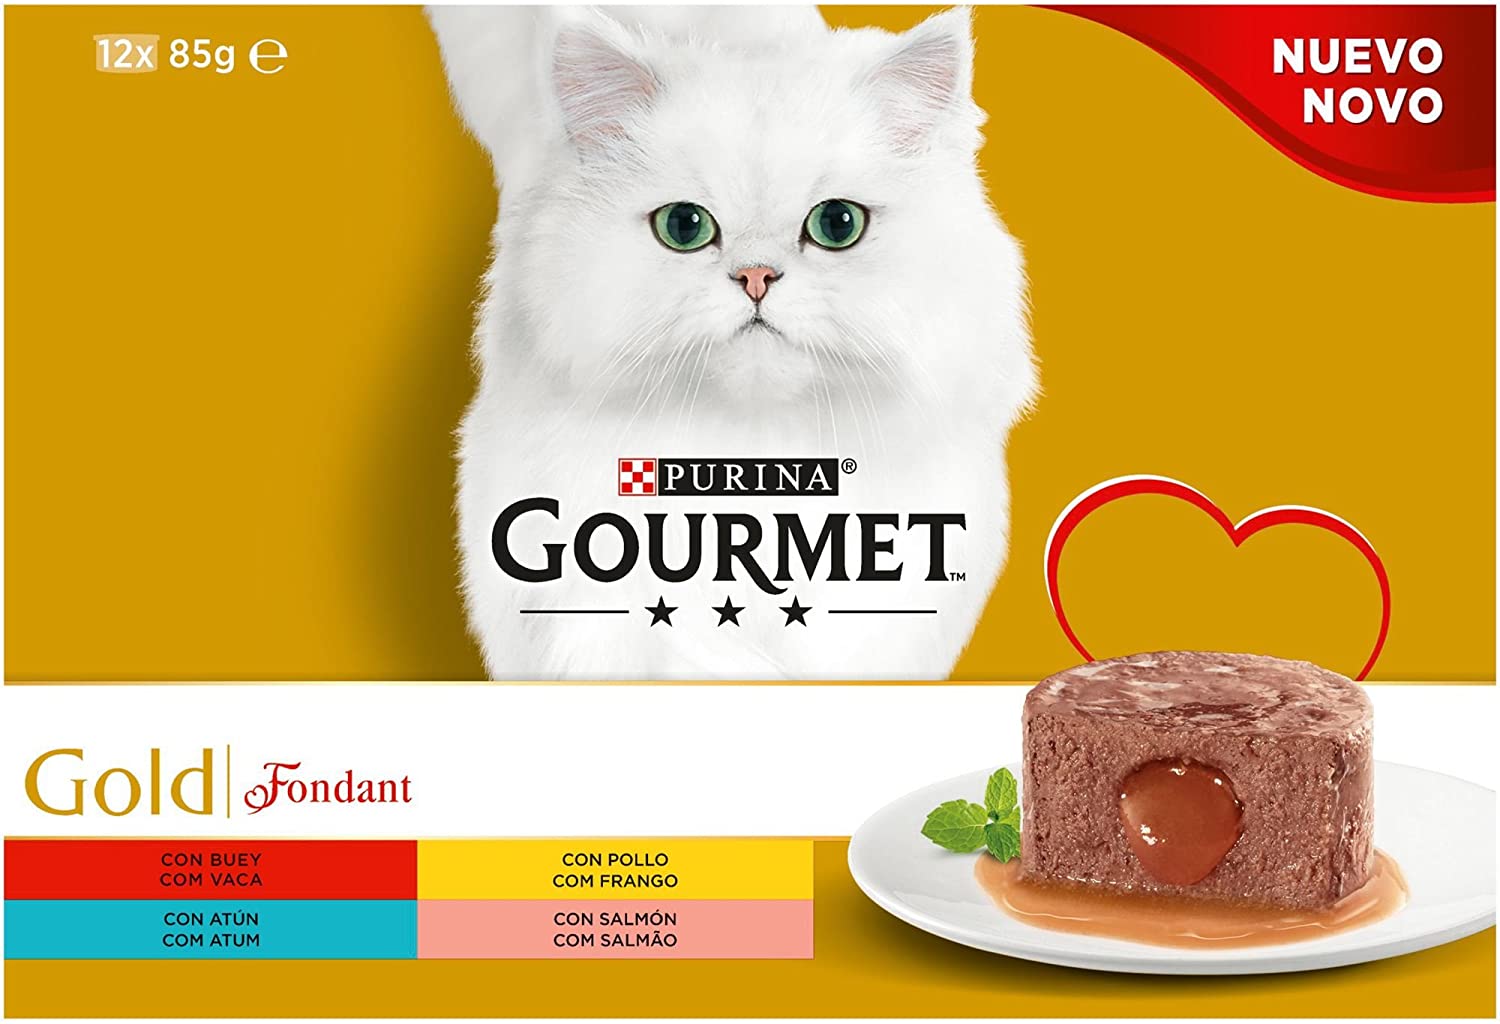  Purina Gourmet Gold Fondant comida para gatos Surtido sabores 8 x [12 x 85 g] 